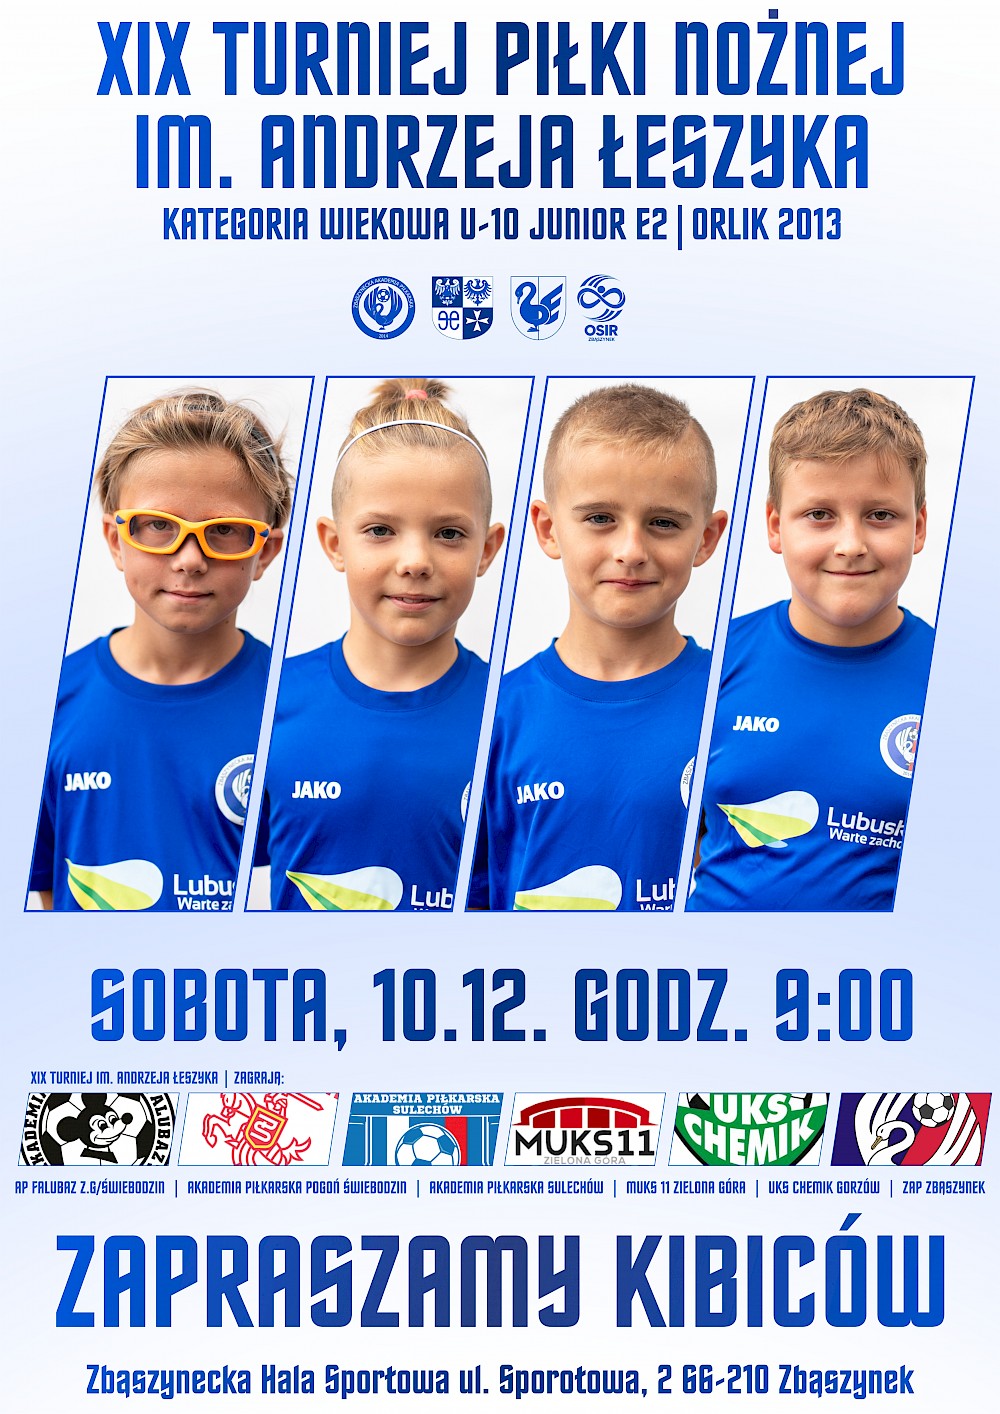 Plakat do wydarzenia XIX Turniej Piłki Nożnej im. Andrzeja Łeszyka